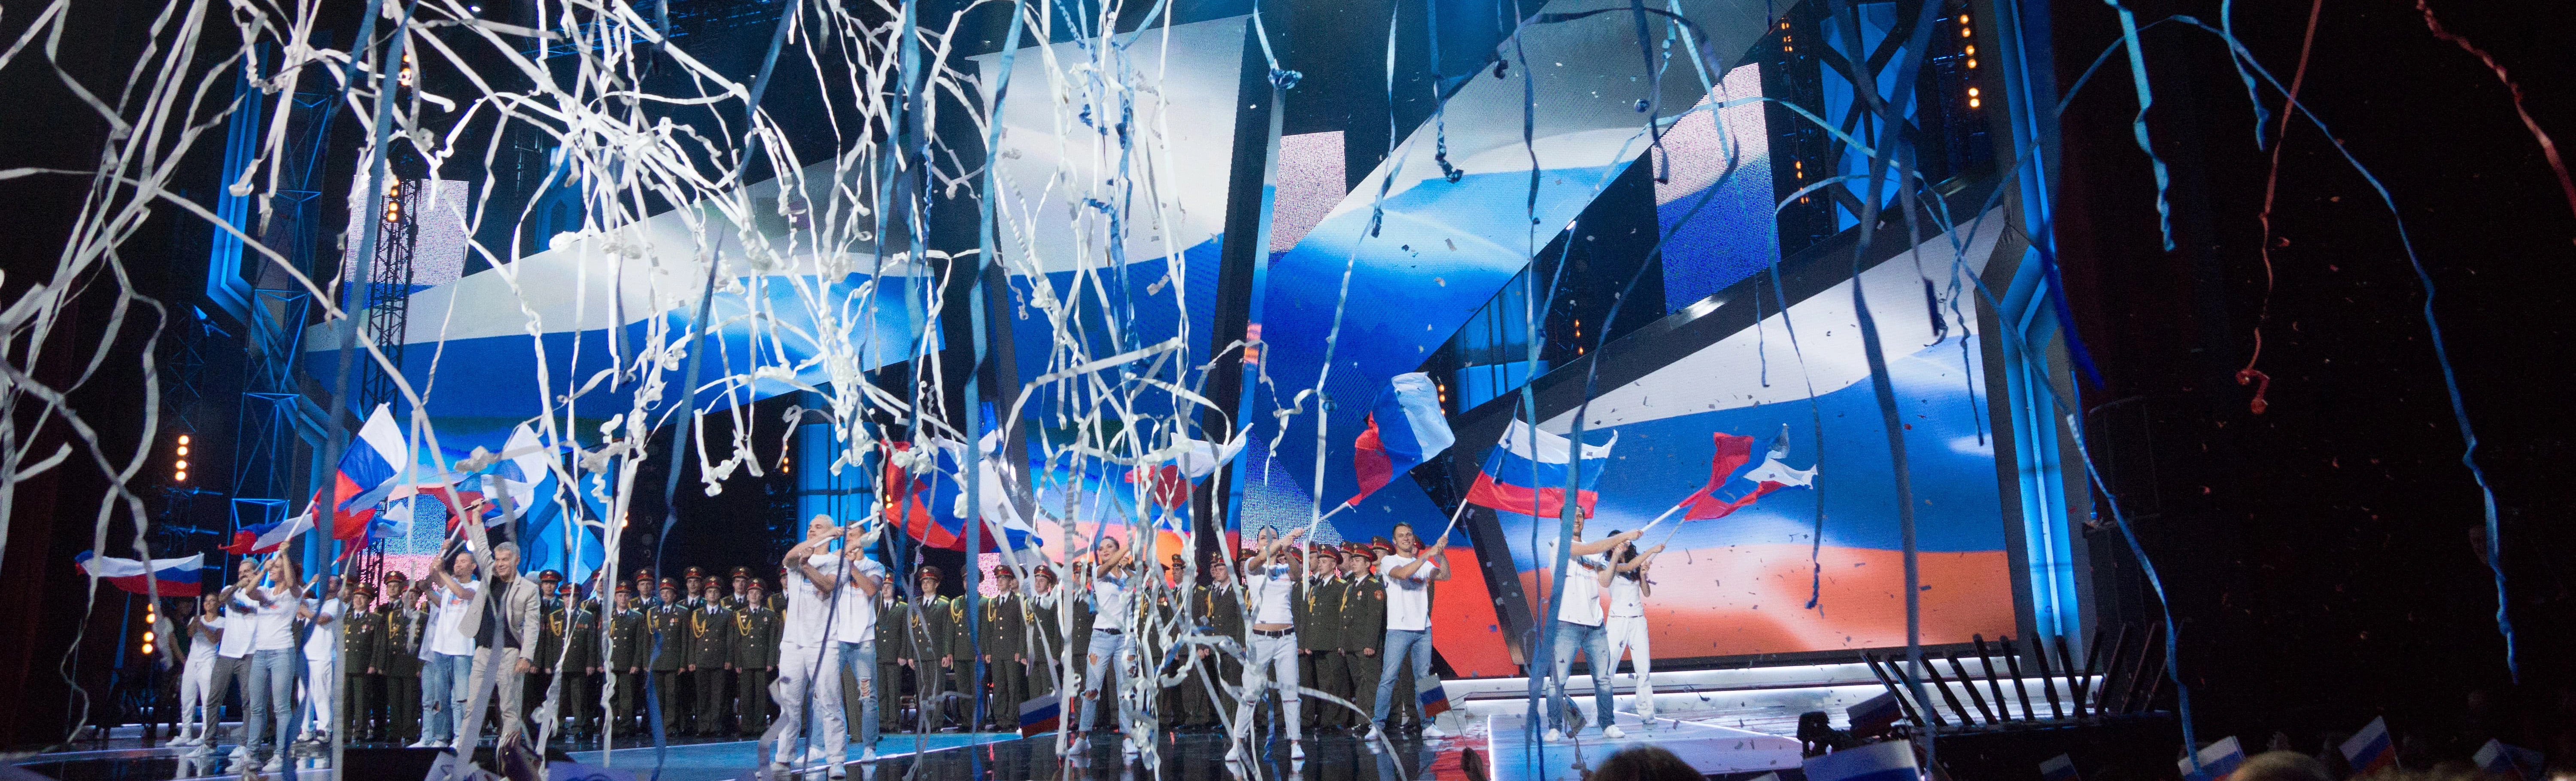 На горизонте маячит событие, способное встряхнуть все ваши эмоции и погрузить в атмосферу настоящей рок-энергии — концерт «День Флага России» на стадионе Лужники!